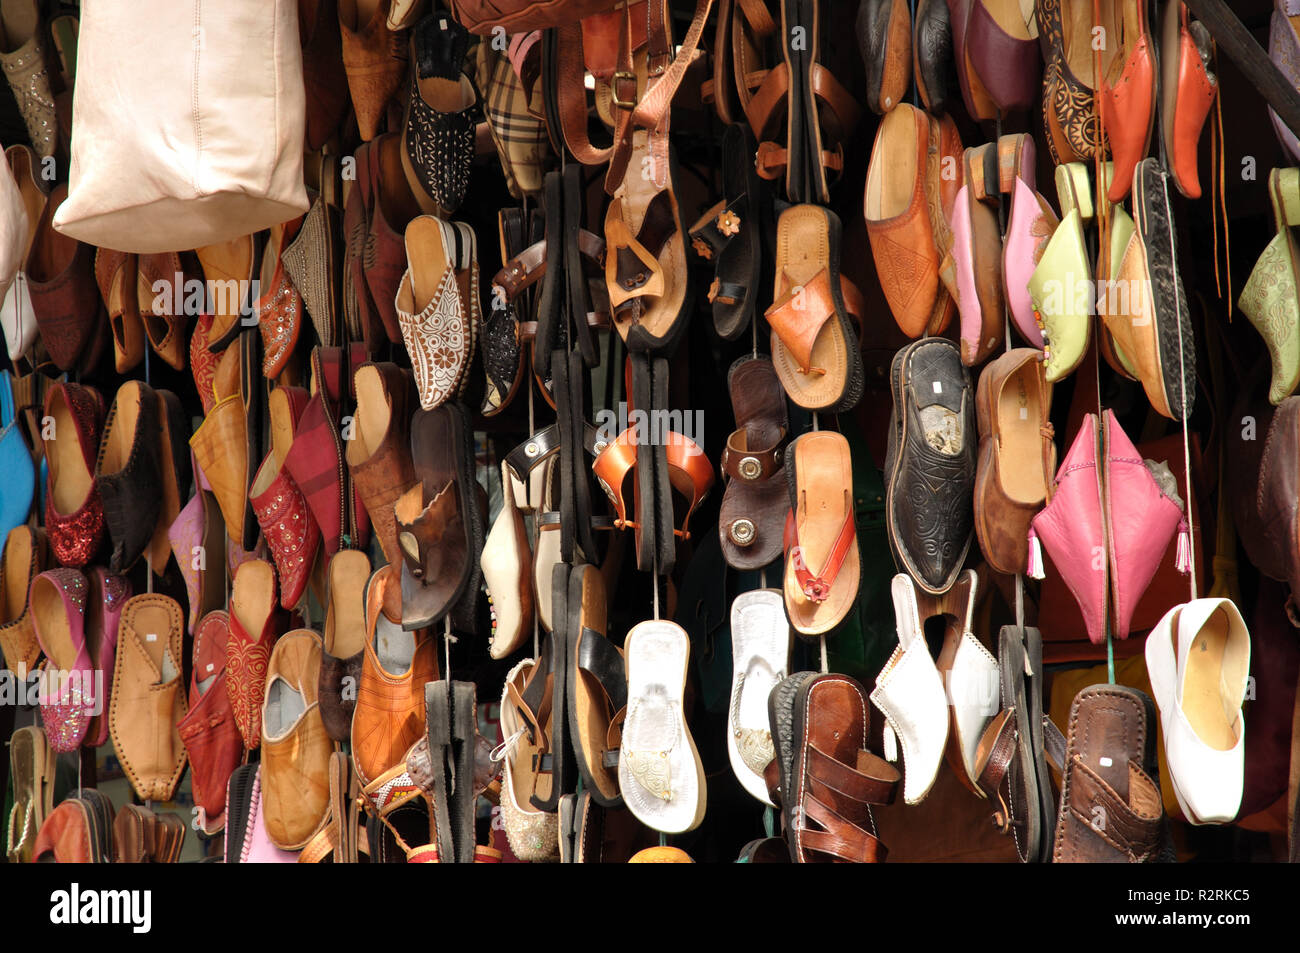 shoe sale in marrakech Stock Photo